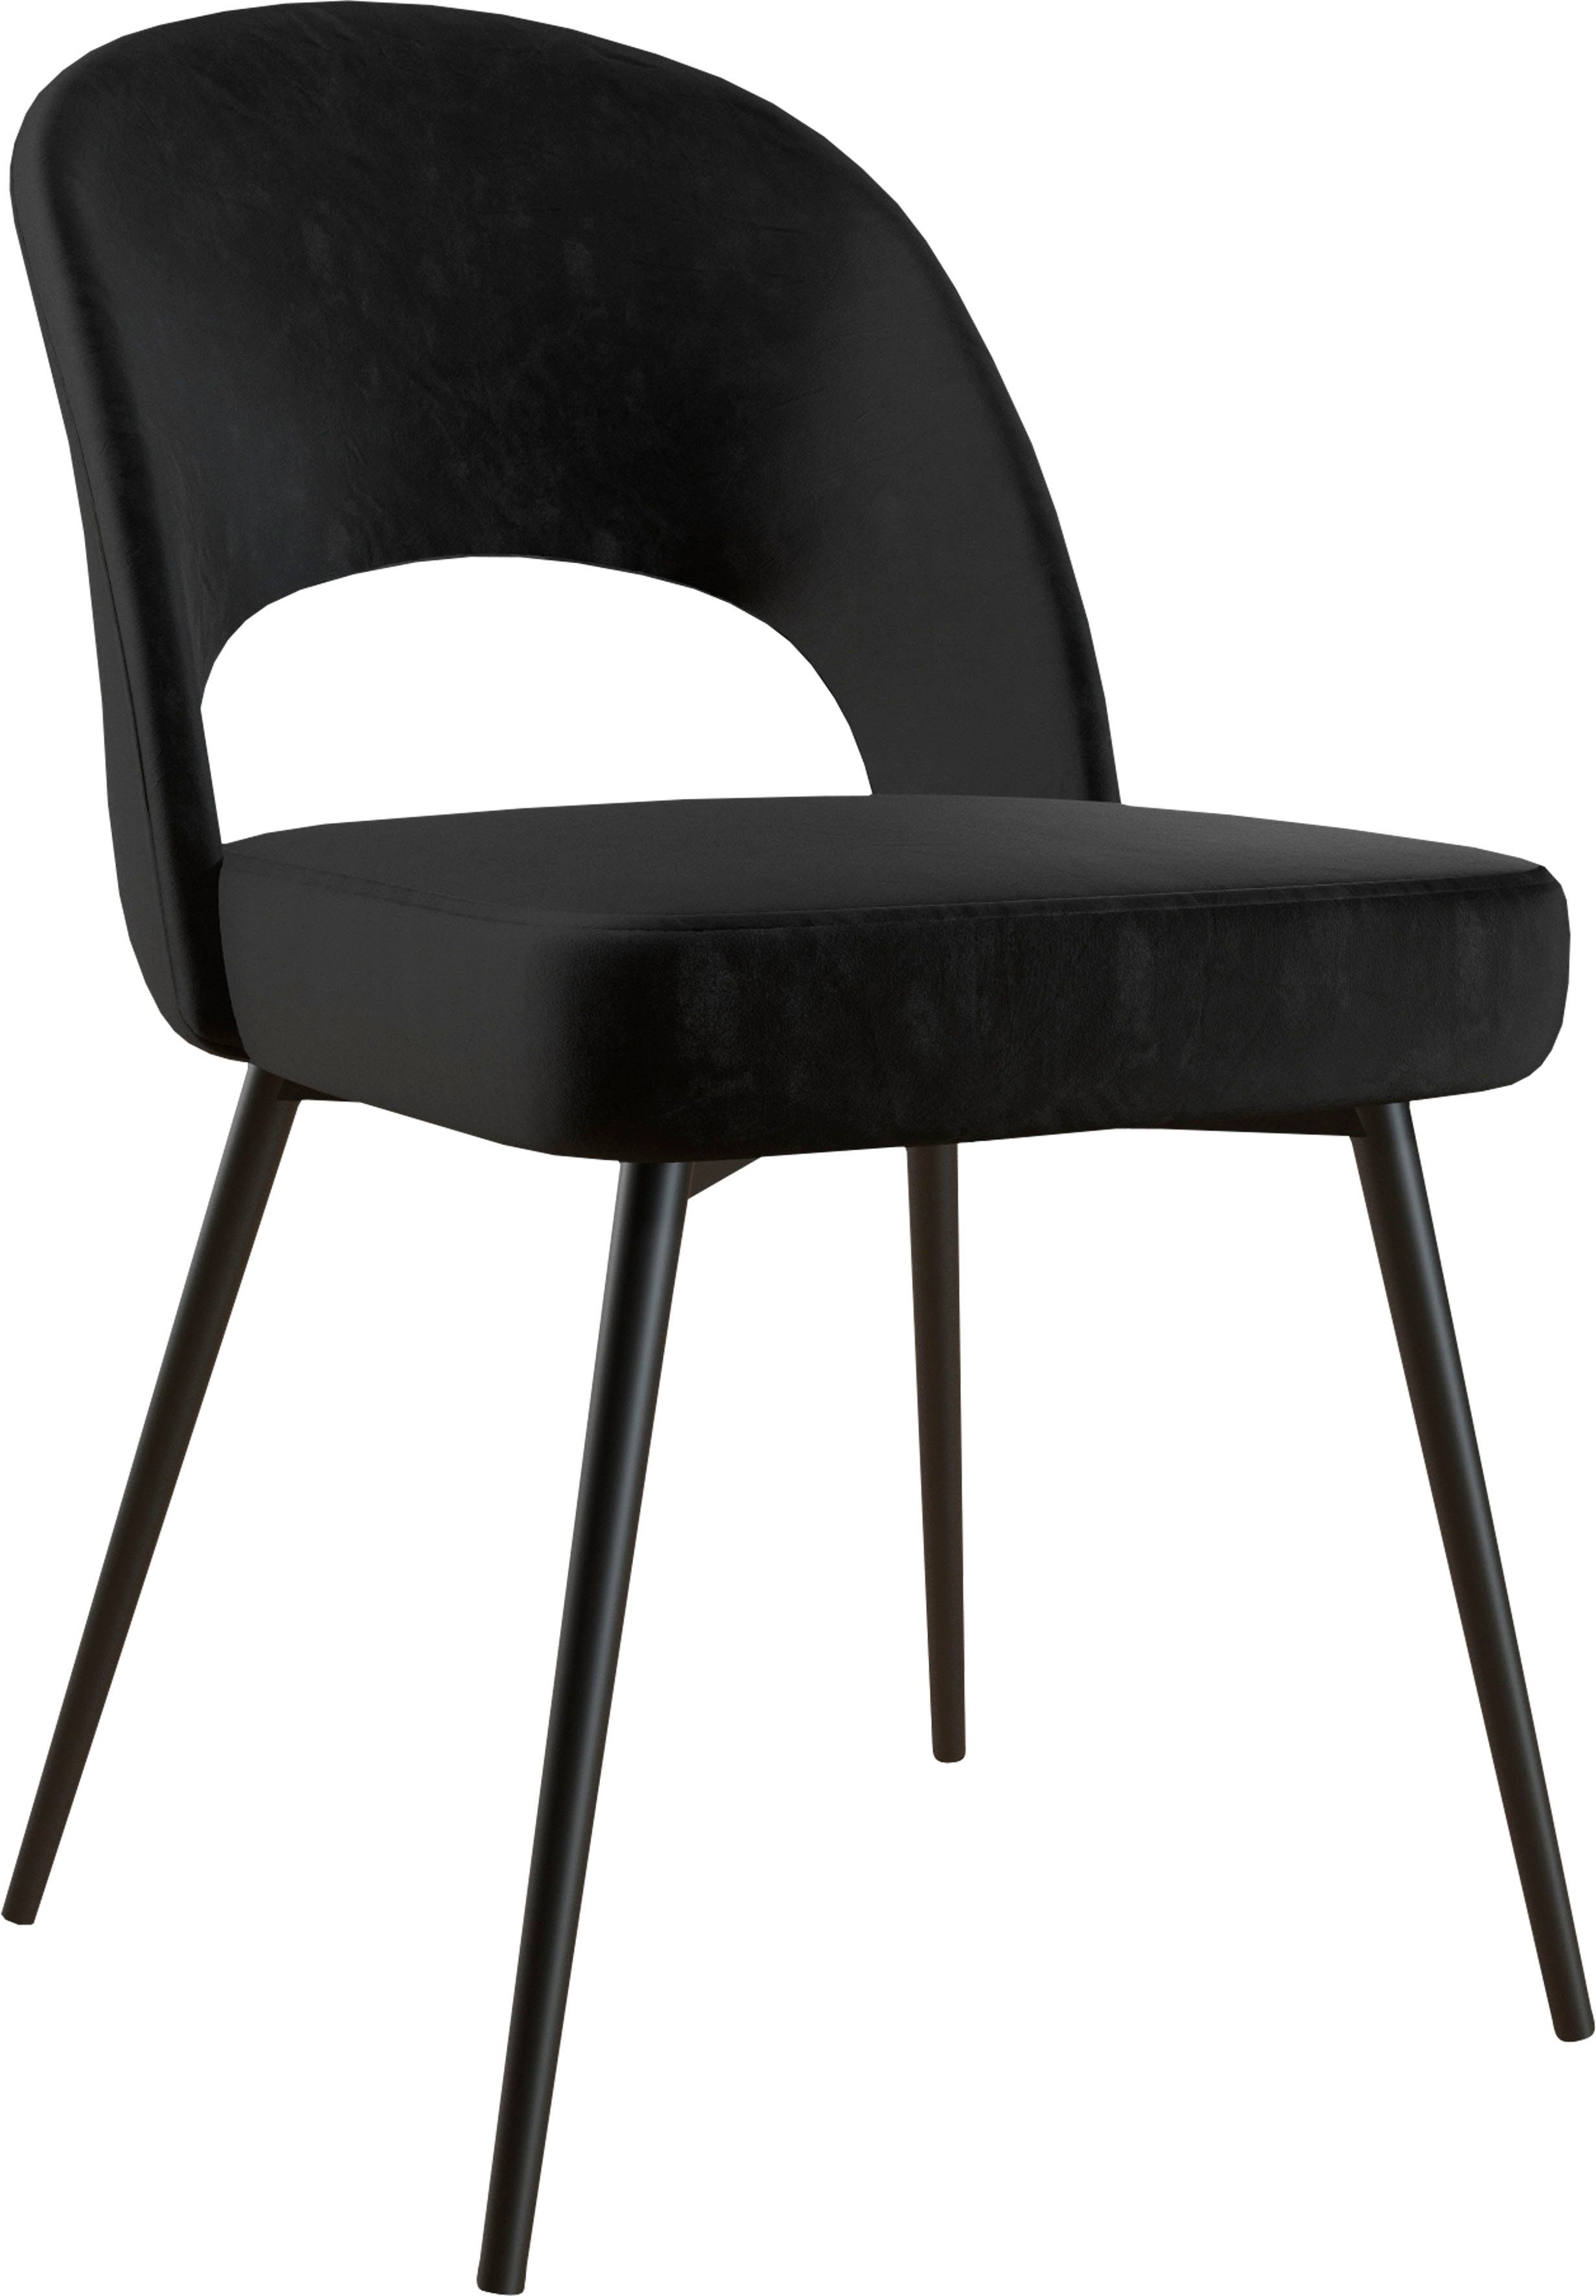 CosmoLiving by Cosmopolitan Esszimmerstuhl Alexi (1 St), Metallgestell, verschiedene Farbvarianten erhältlich, Sitzhöhe 46 cm schwarz | Stühle